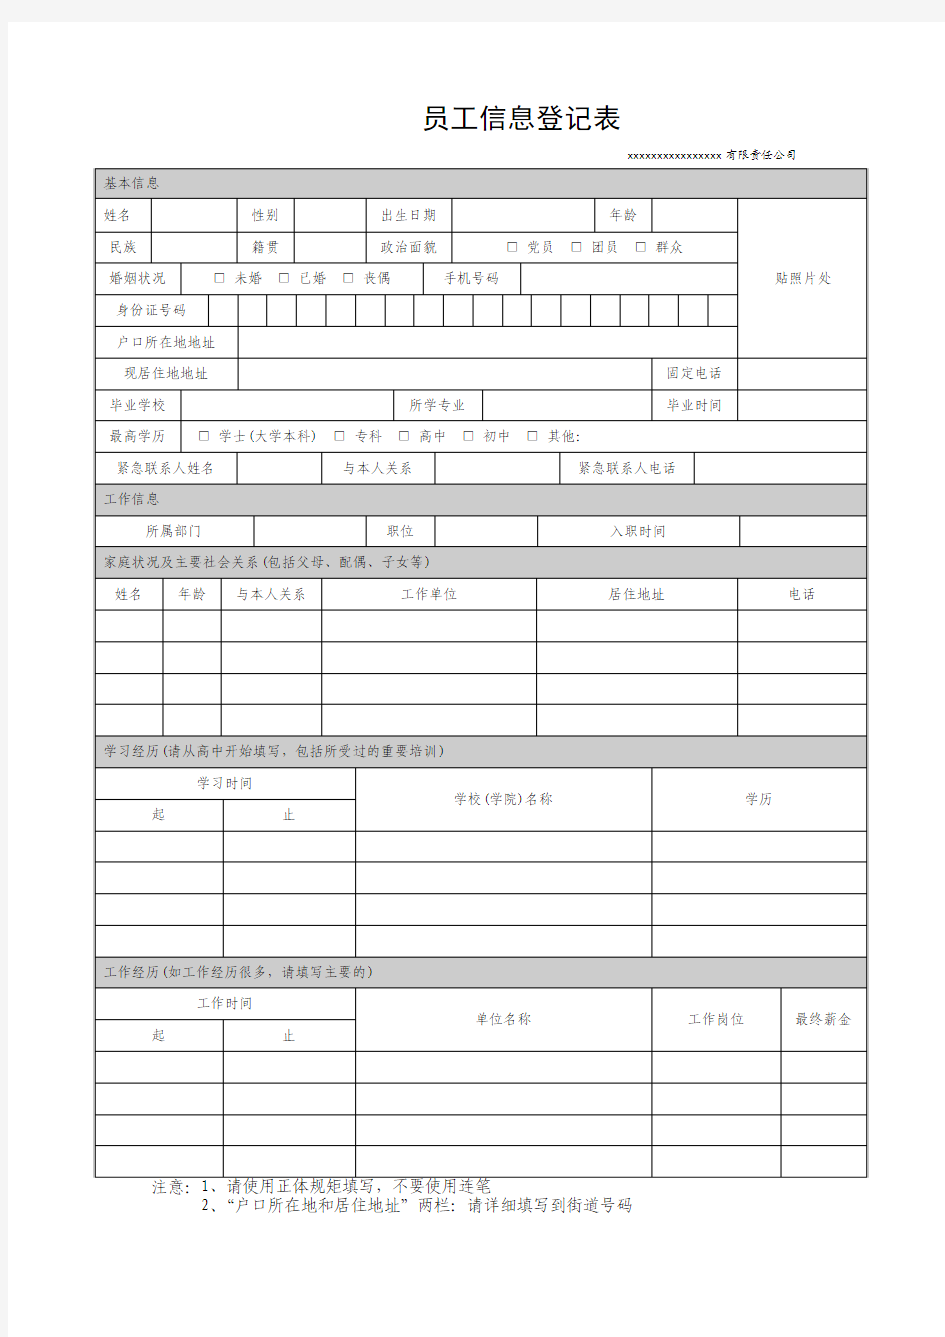 员工信息登记表(模板)